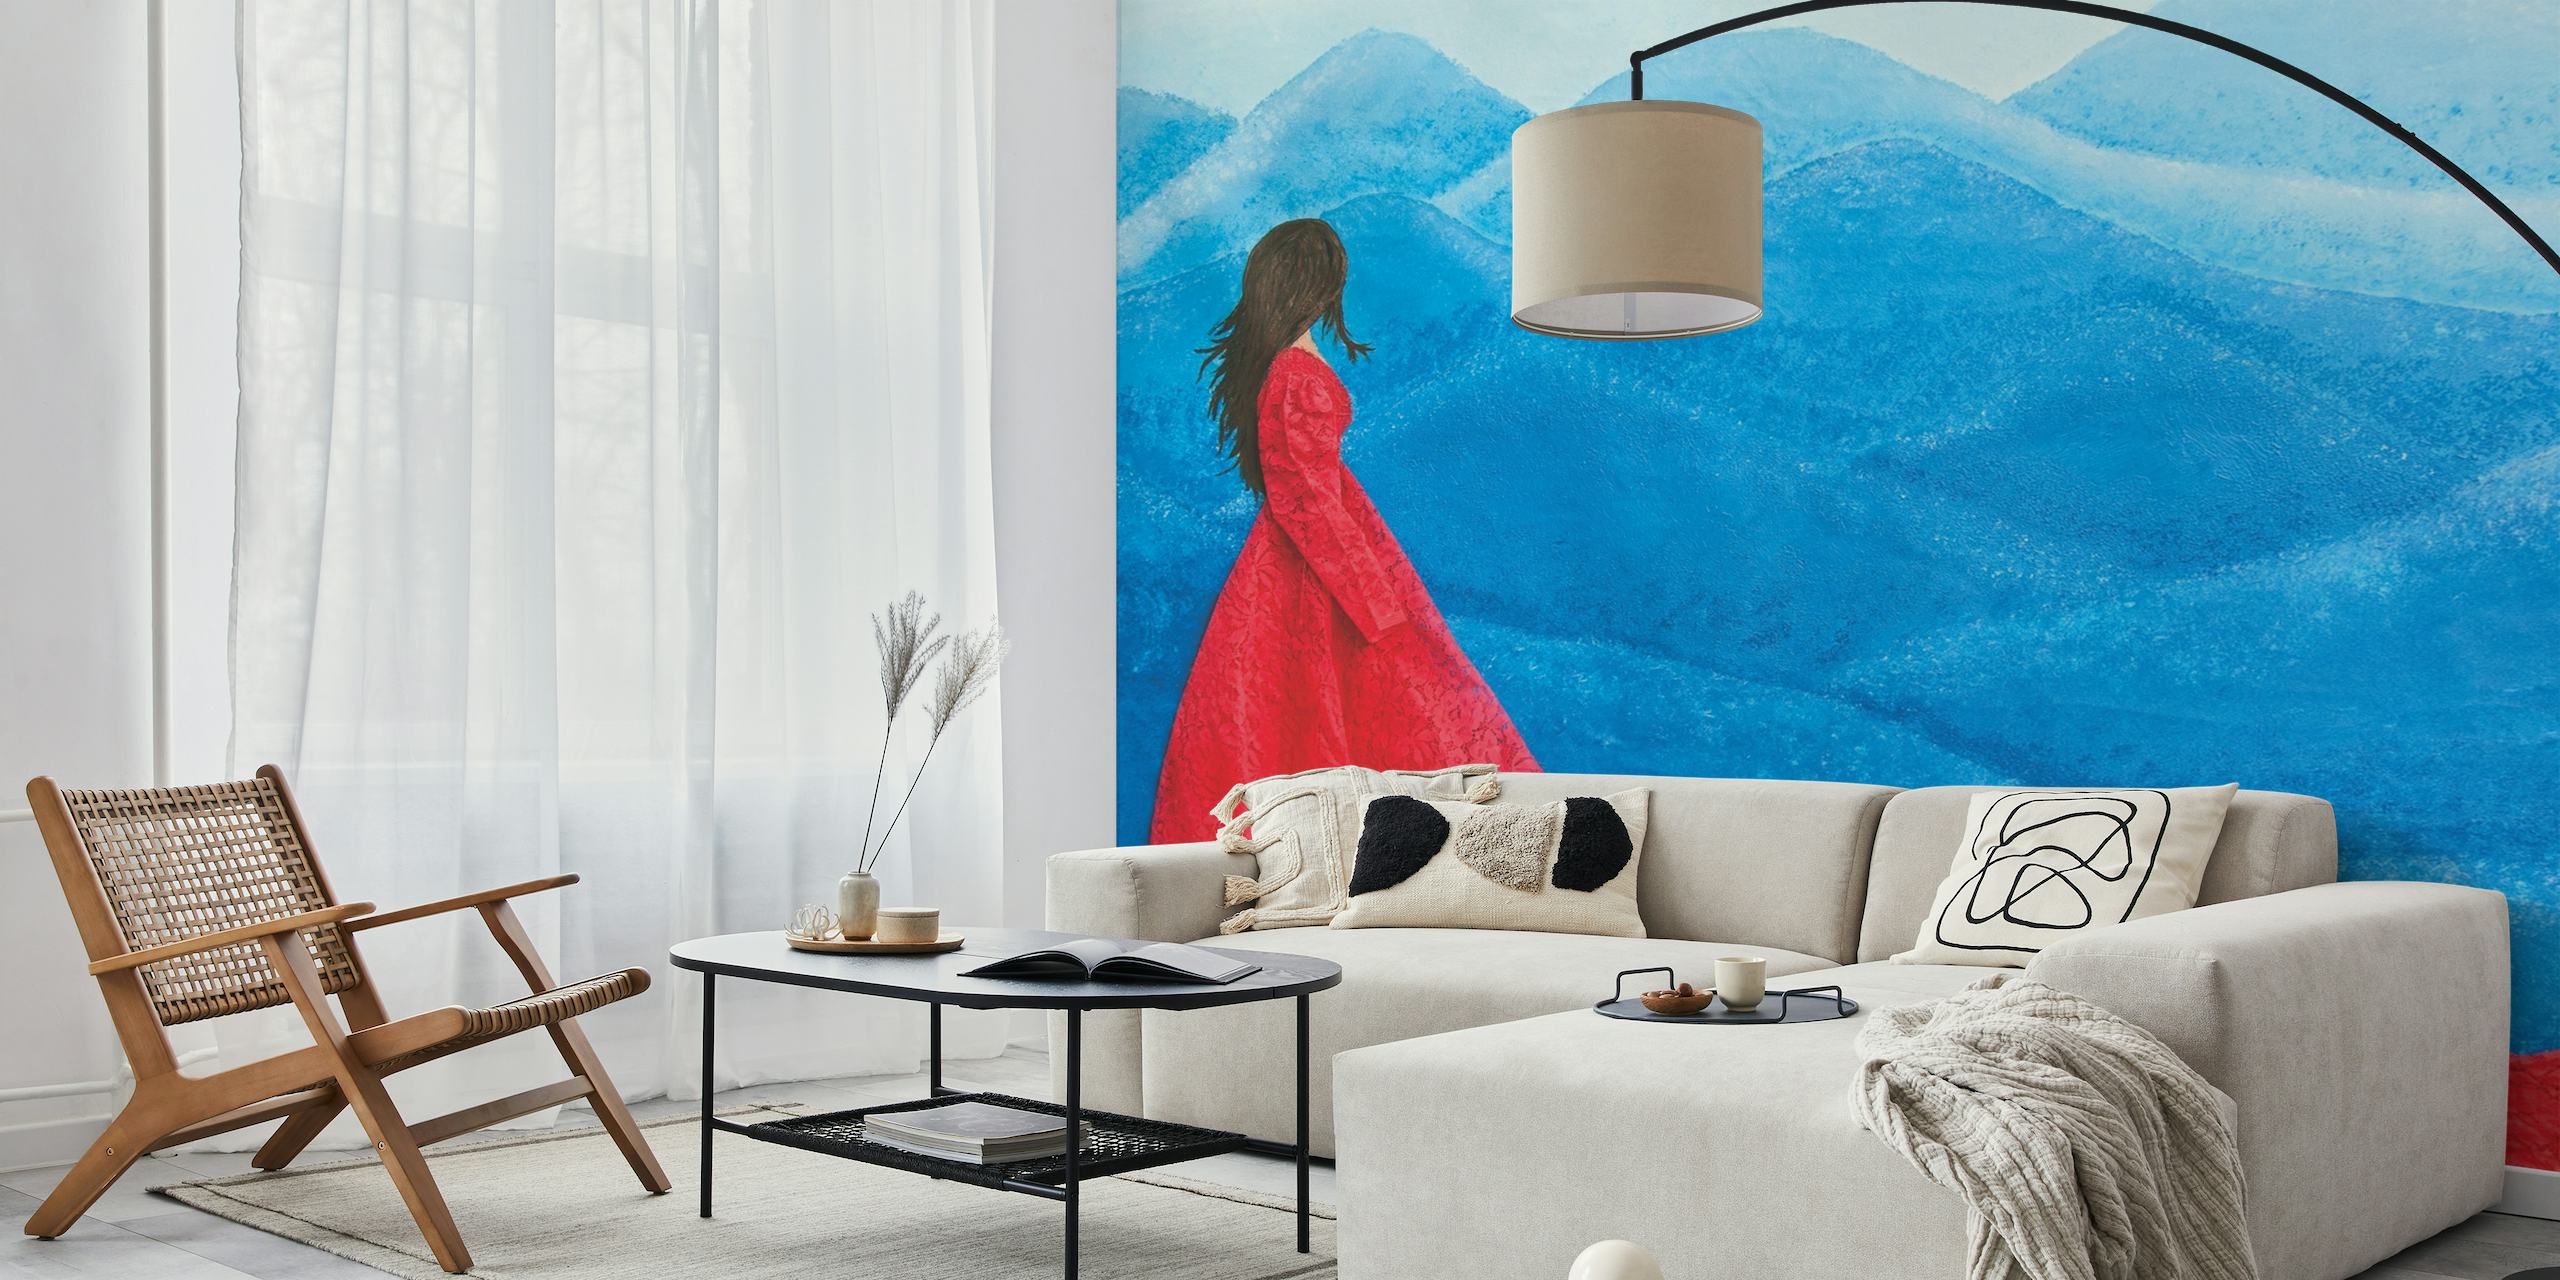 Elegantna figura u crvenoj haljini naspram zidne slike s apstraktnim plavim valovima